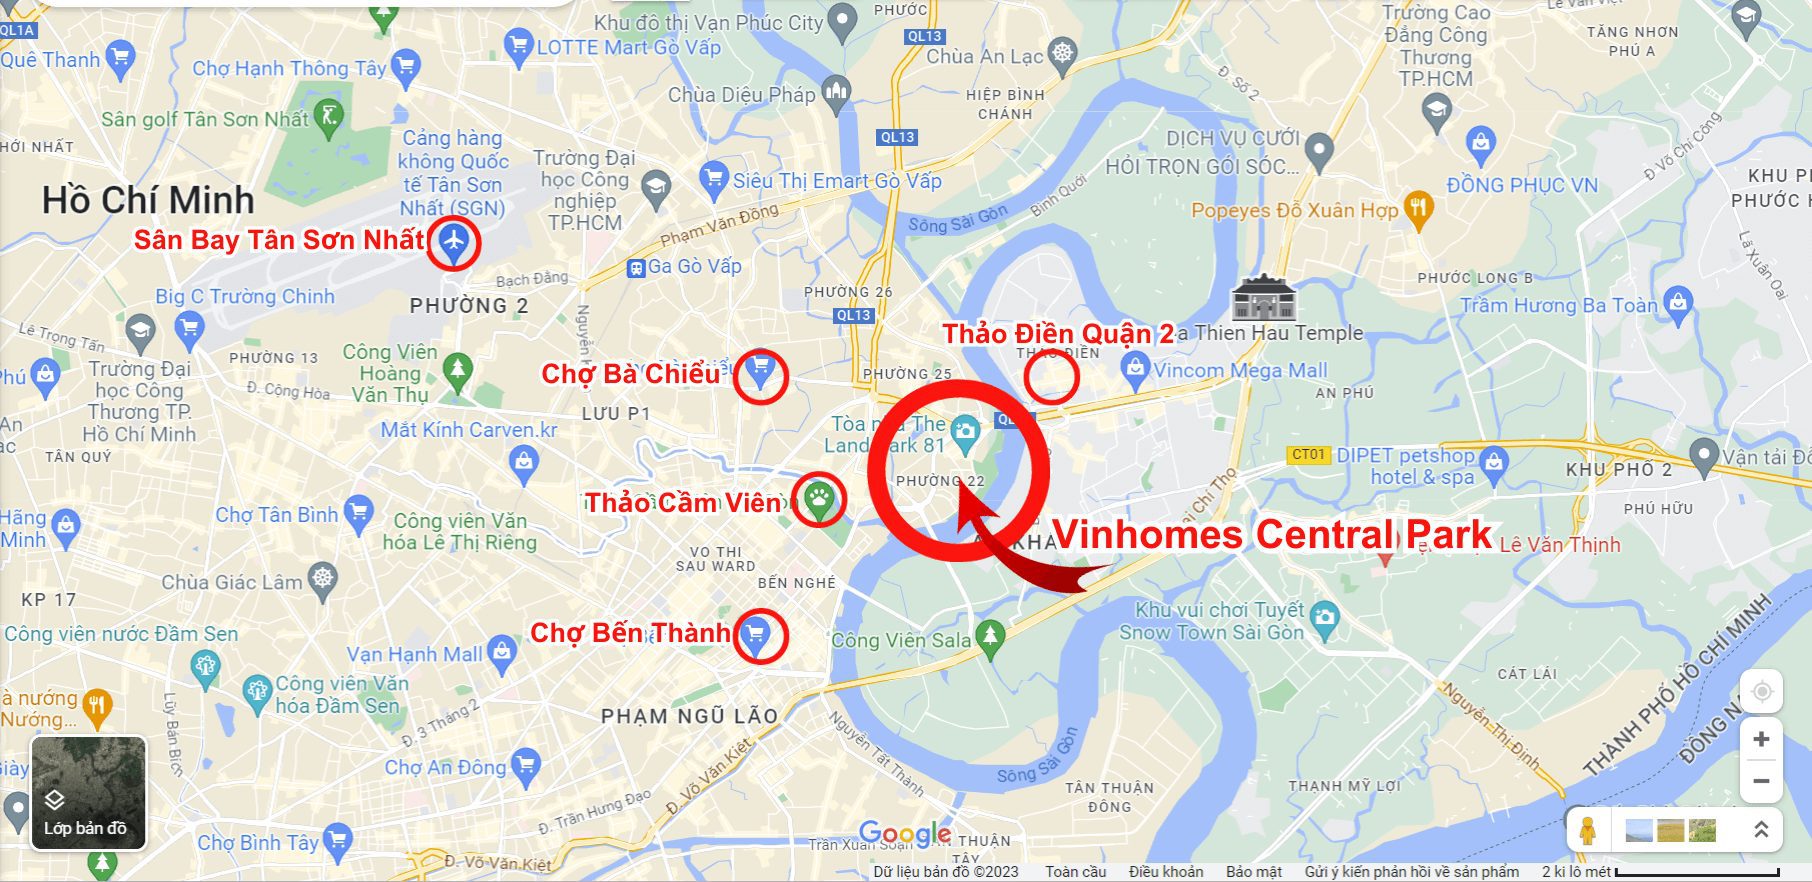 Google Map Vinhomes Central Park